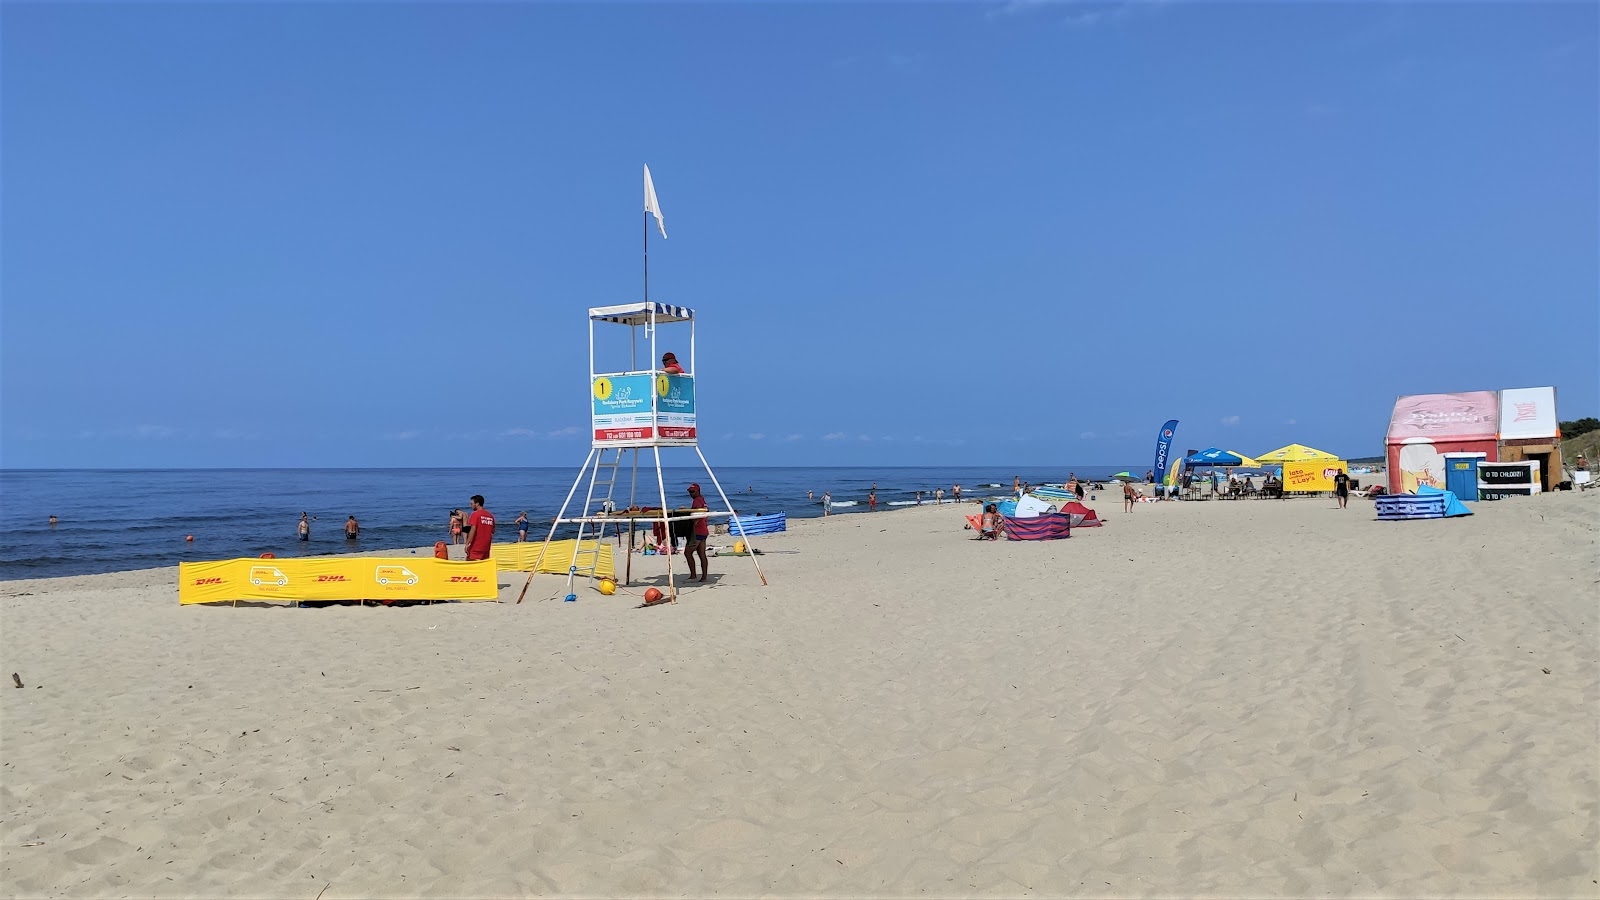 Valokuva Piaski Rybacka beachista. sijaitsee luonnonalueella